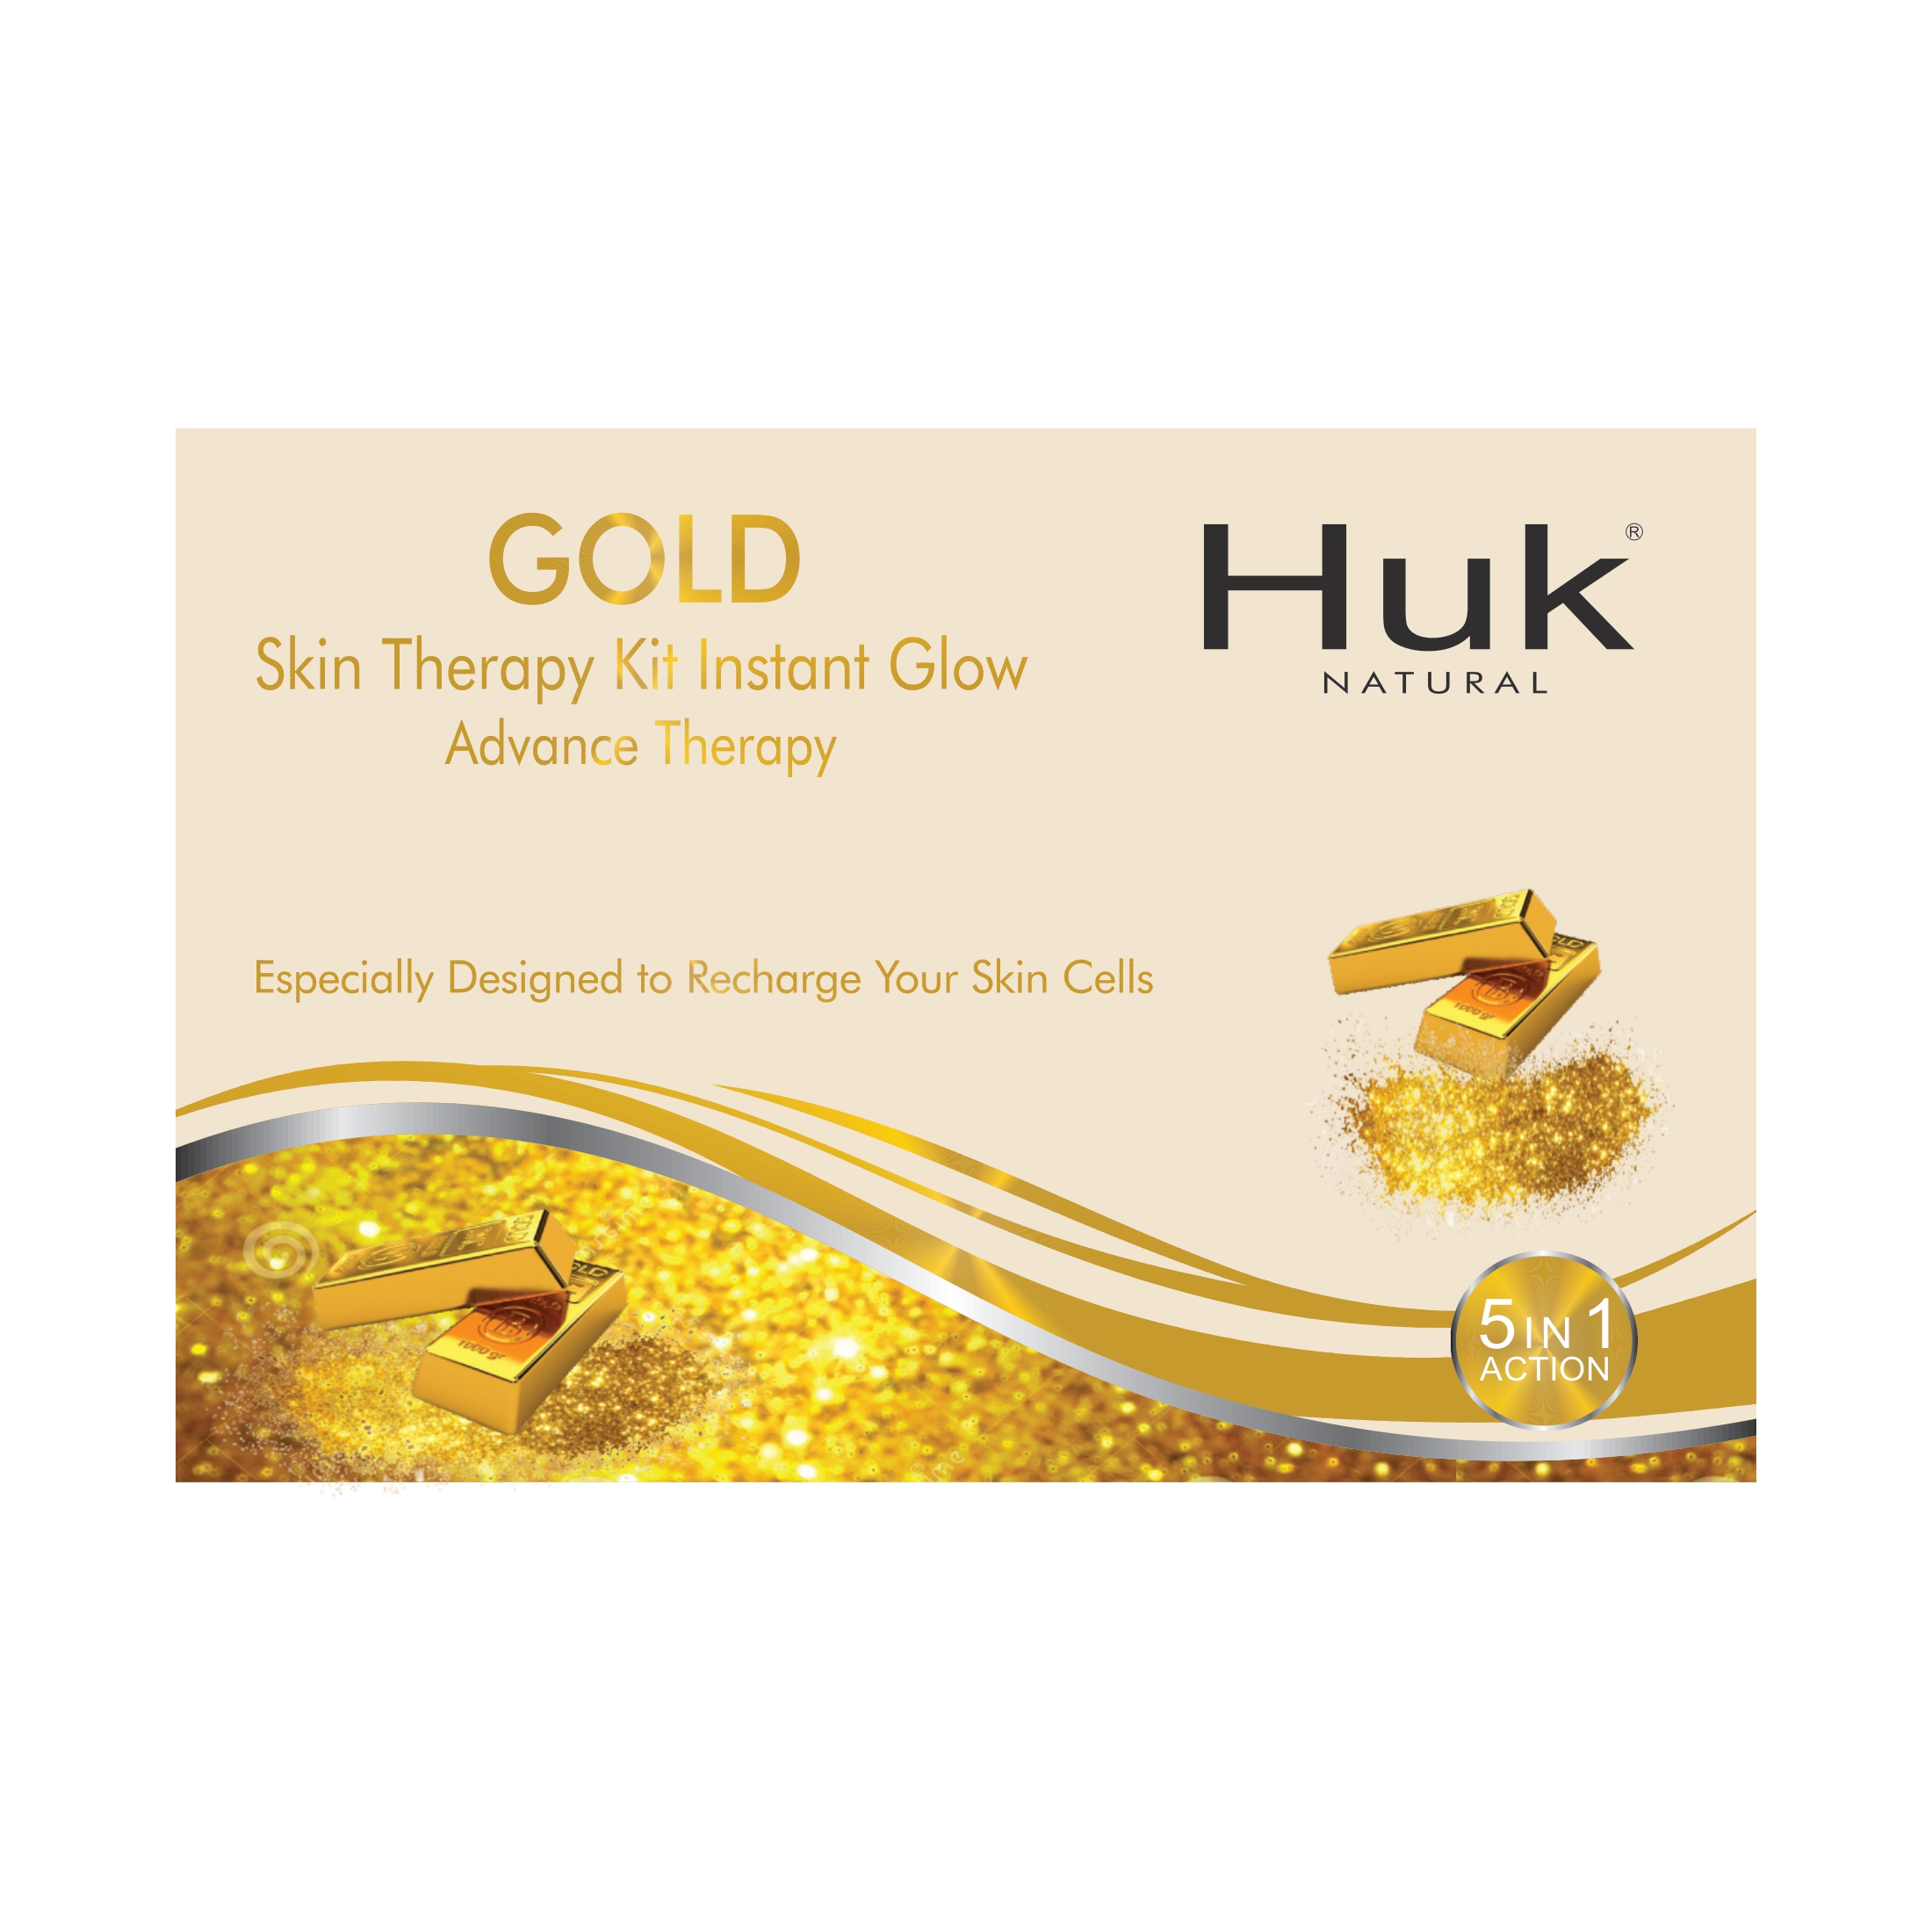 Huk Gold Facial Kit from Huk